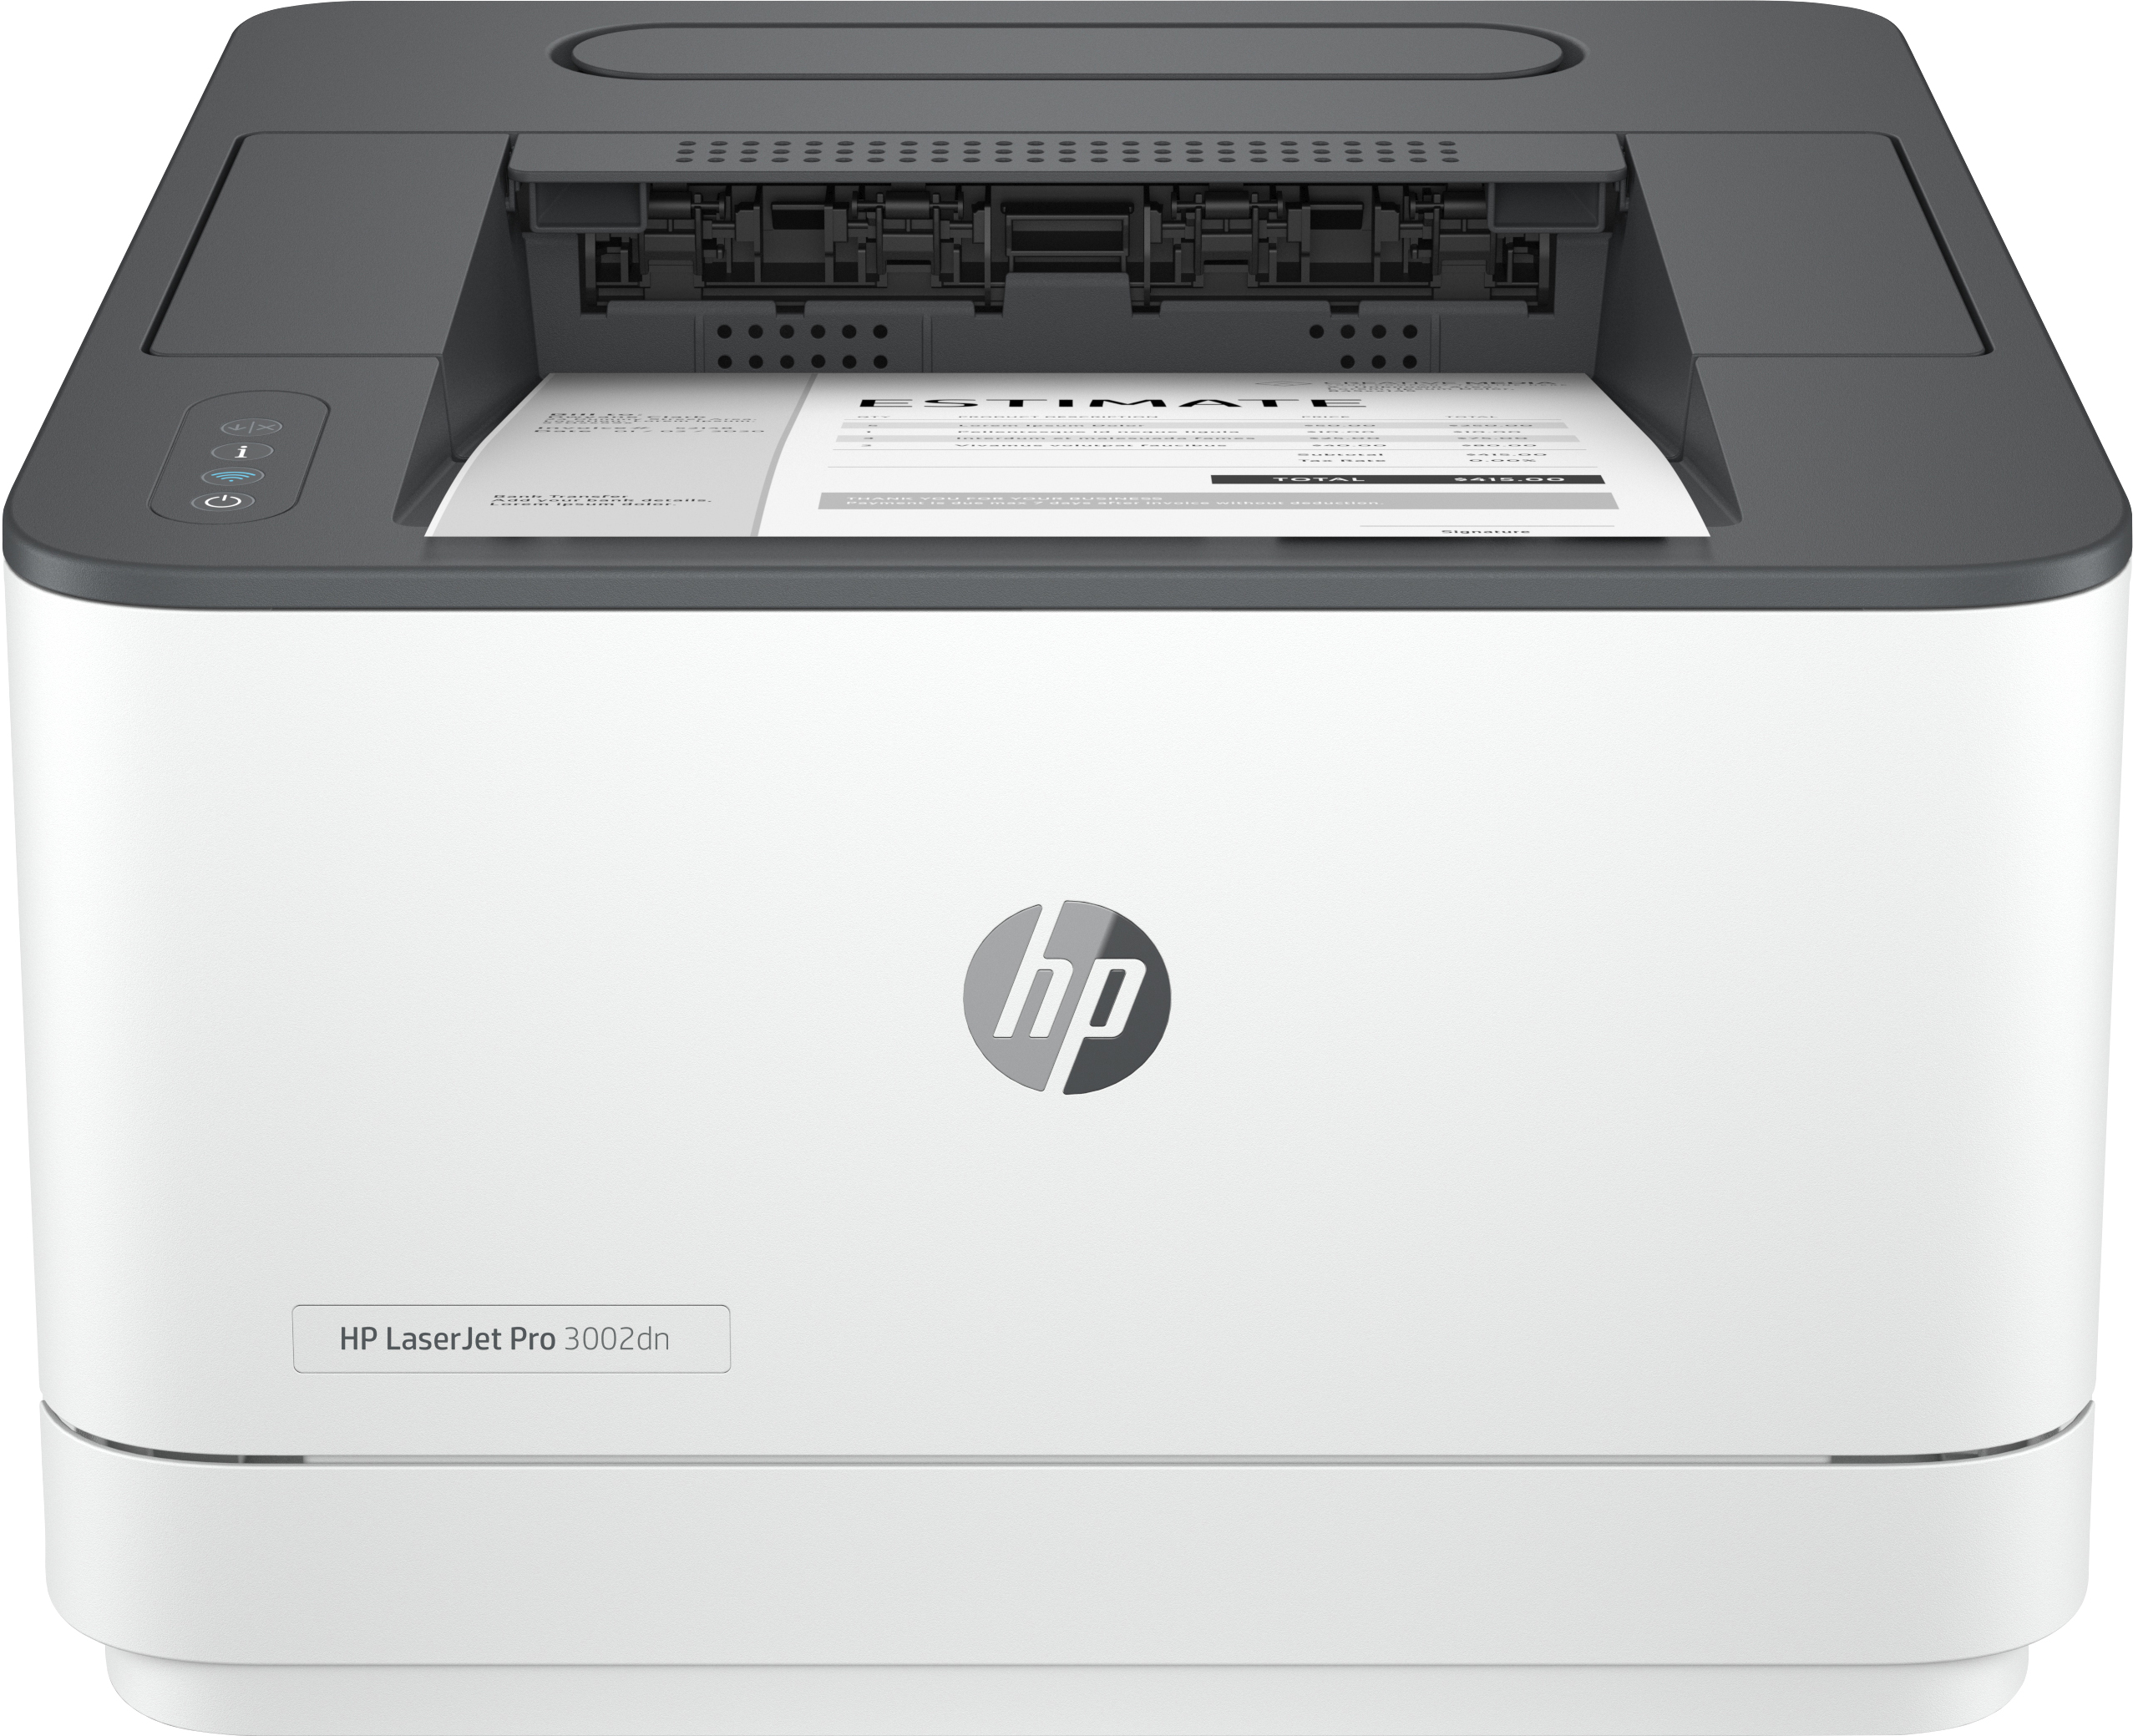 HP HP LaserJet Pro 3002dn printer, Zwart-wit, Printer voor Kleine en middelgrote ondernemingen, Print, Draadloos; Printen vanaf telefoon of tablet; Dubbelzijdig printen